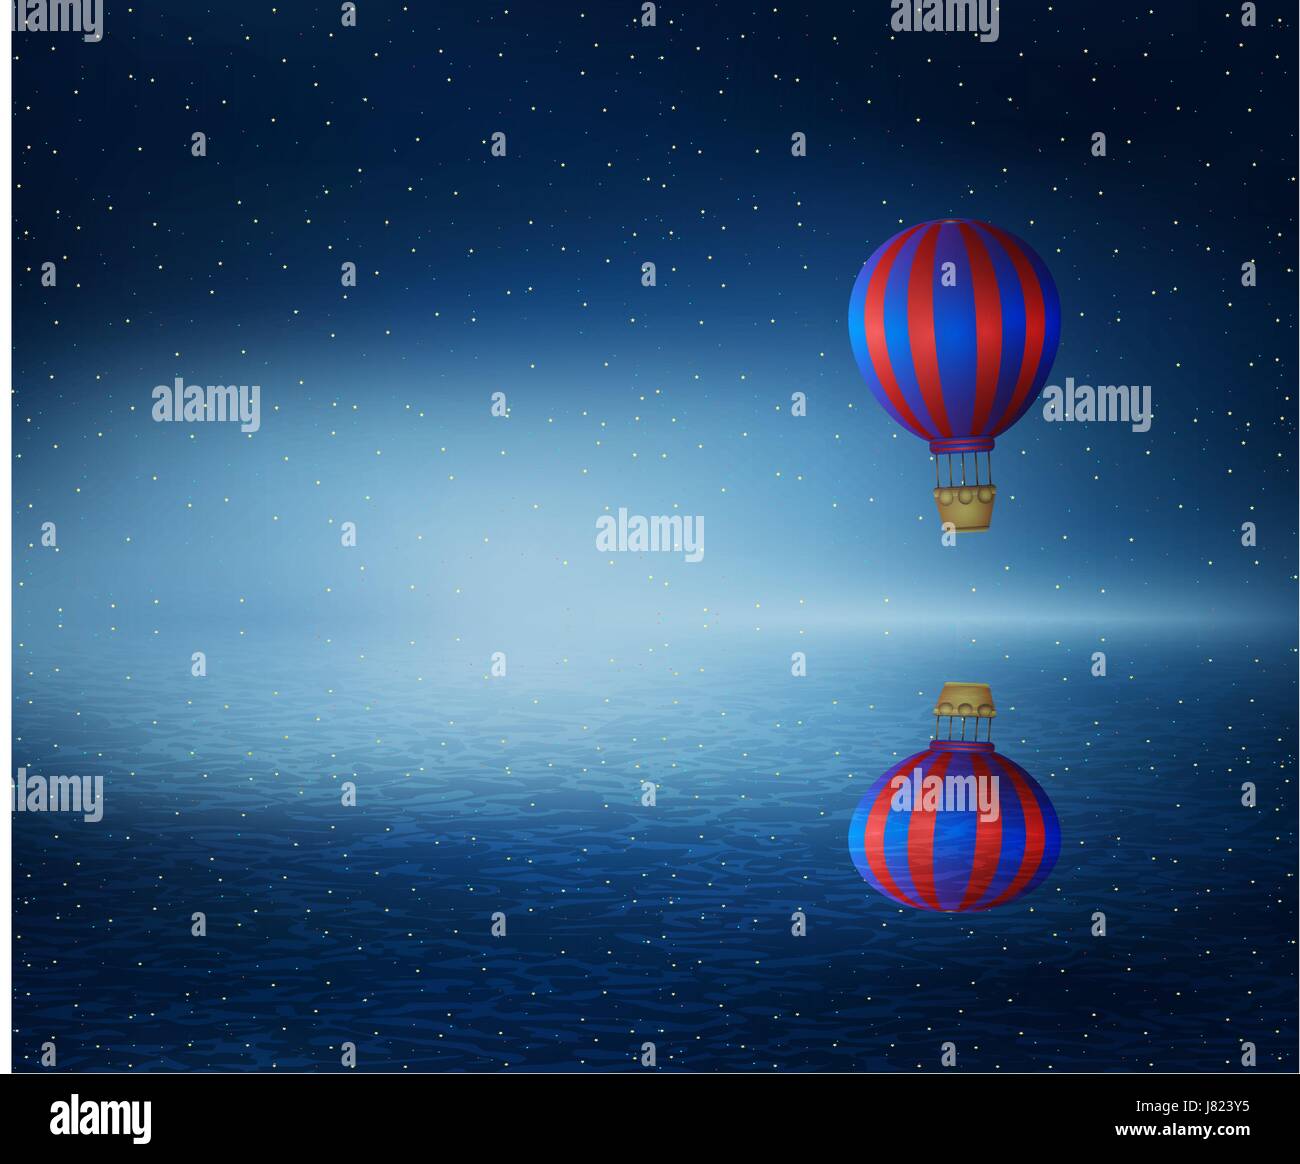 Vektor-Illustration als ein Heißluftballon überfliegen die einen kalten dunklen blauen Ozean. Wunderbare Landschaft mit einem sternenklaren Himmelshintergrund zu reflektieren, in wat Stock Vektor